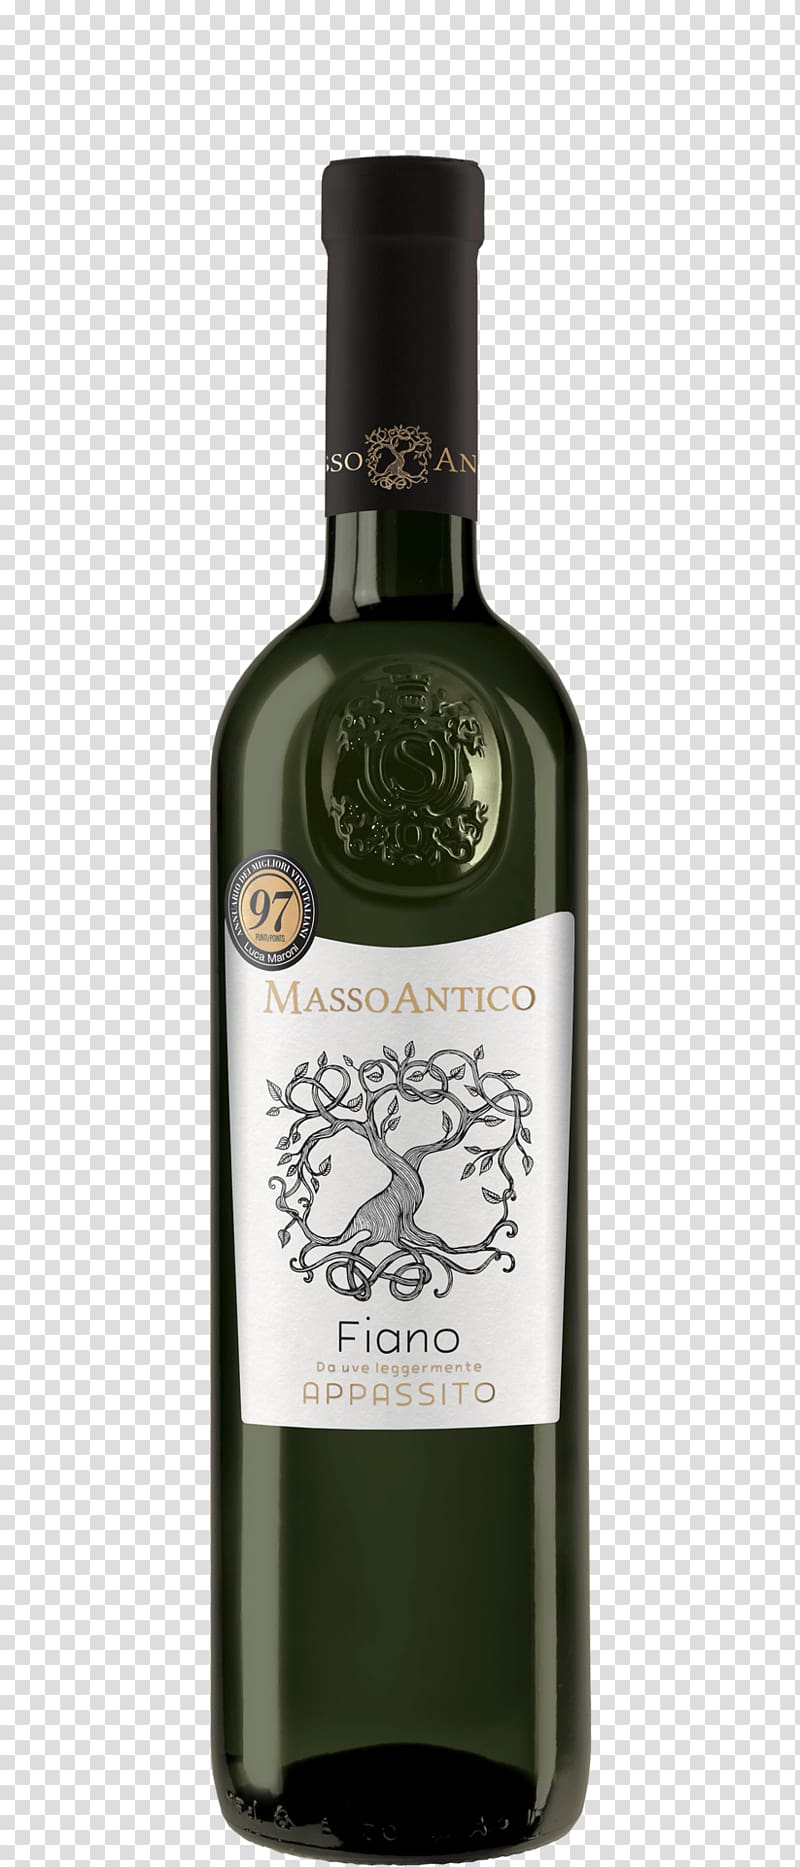 Liqueur White wine Fiano Zinfandel, wine transparent background PNG clipart